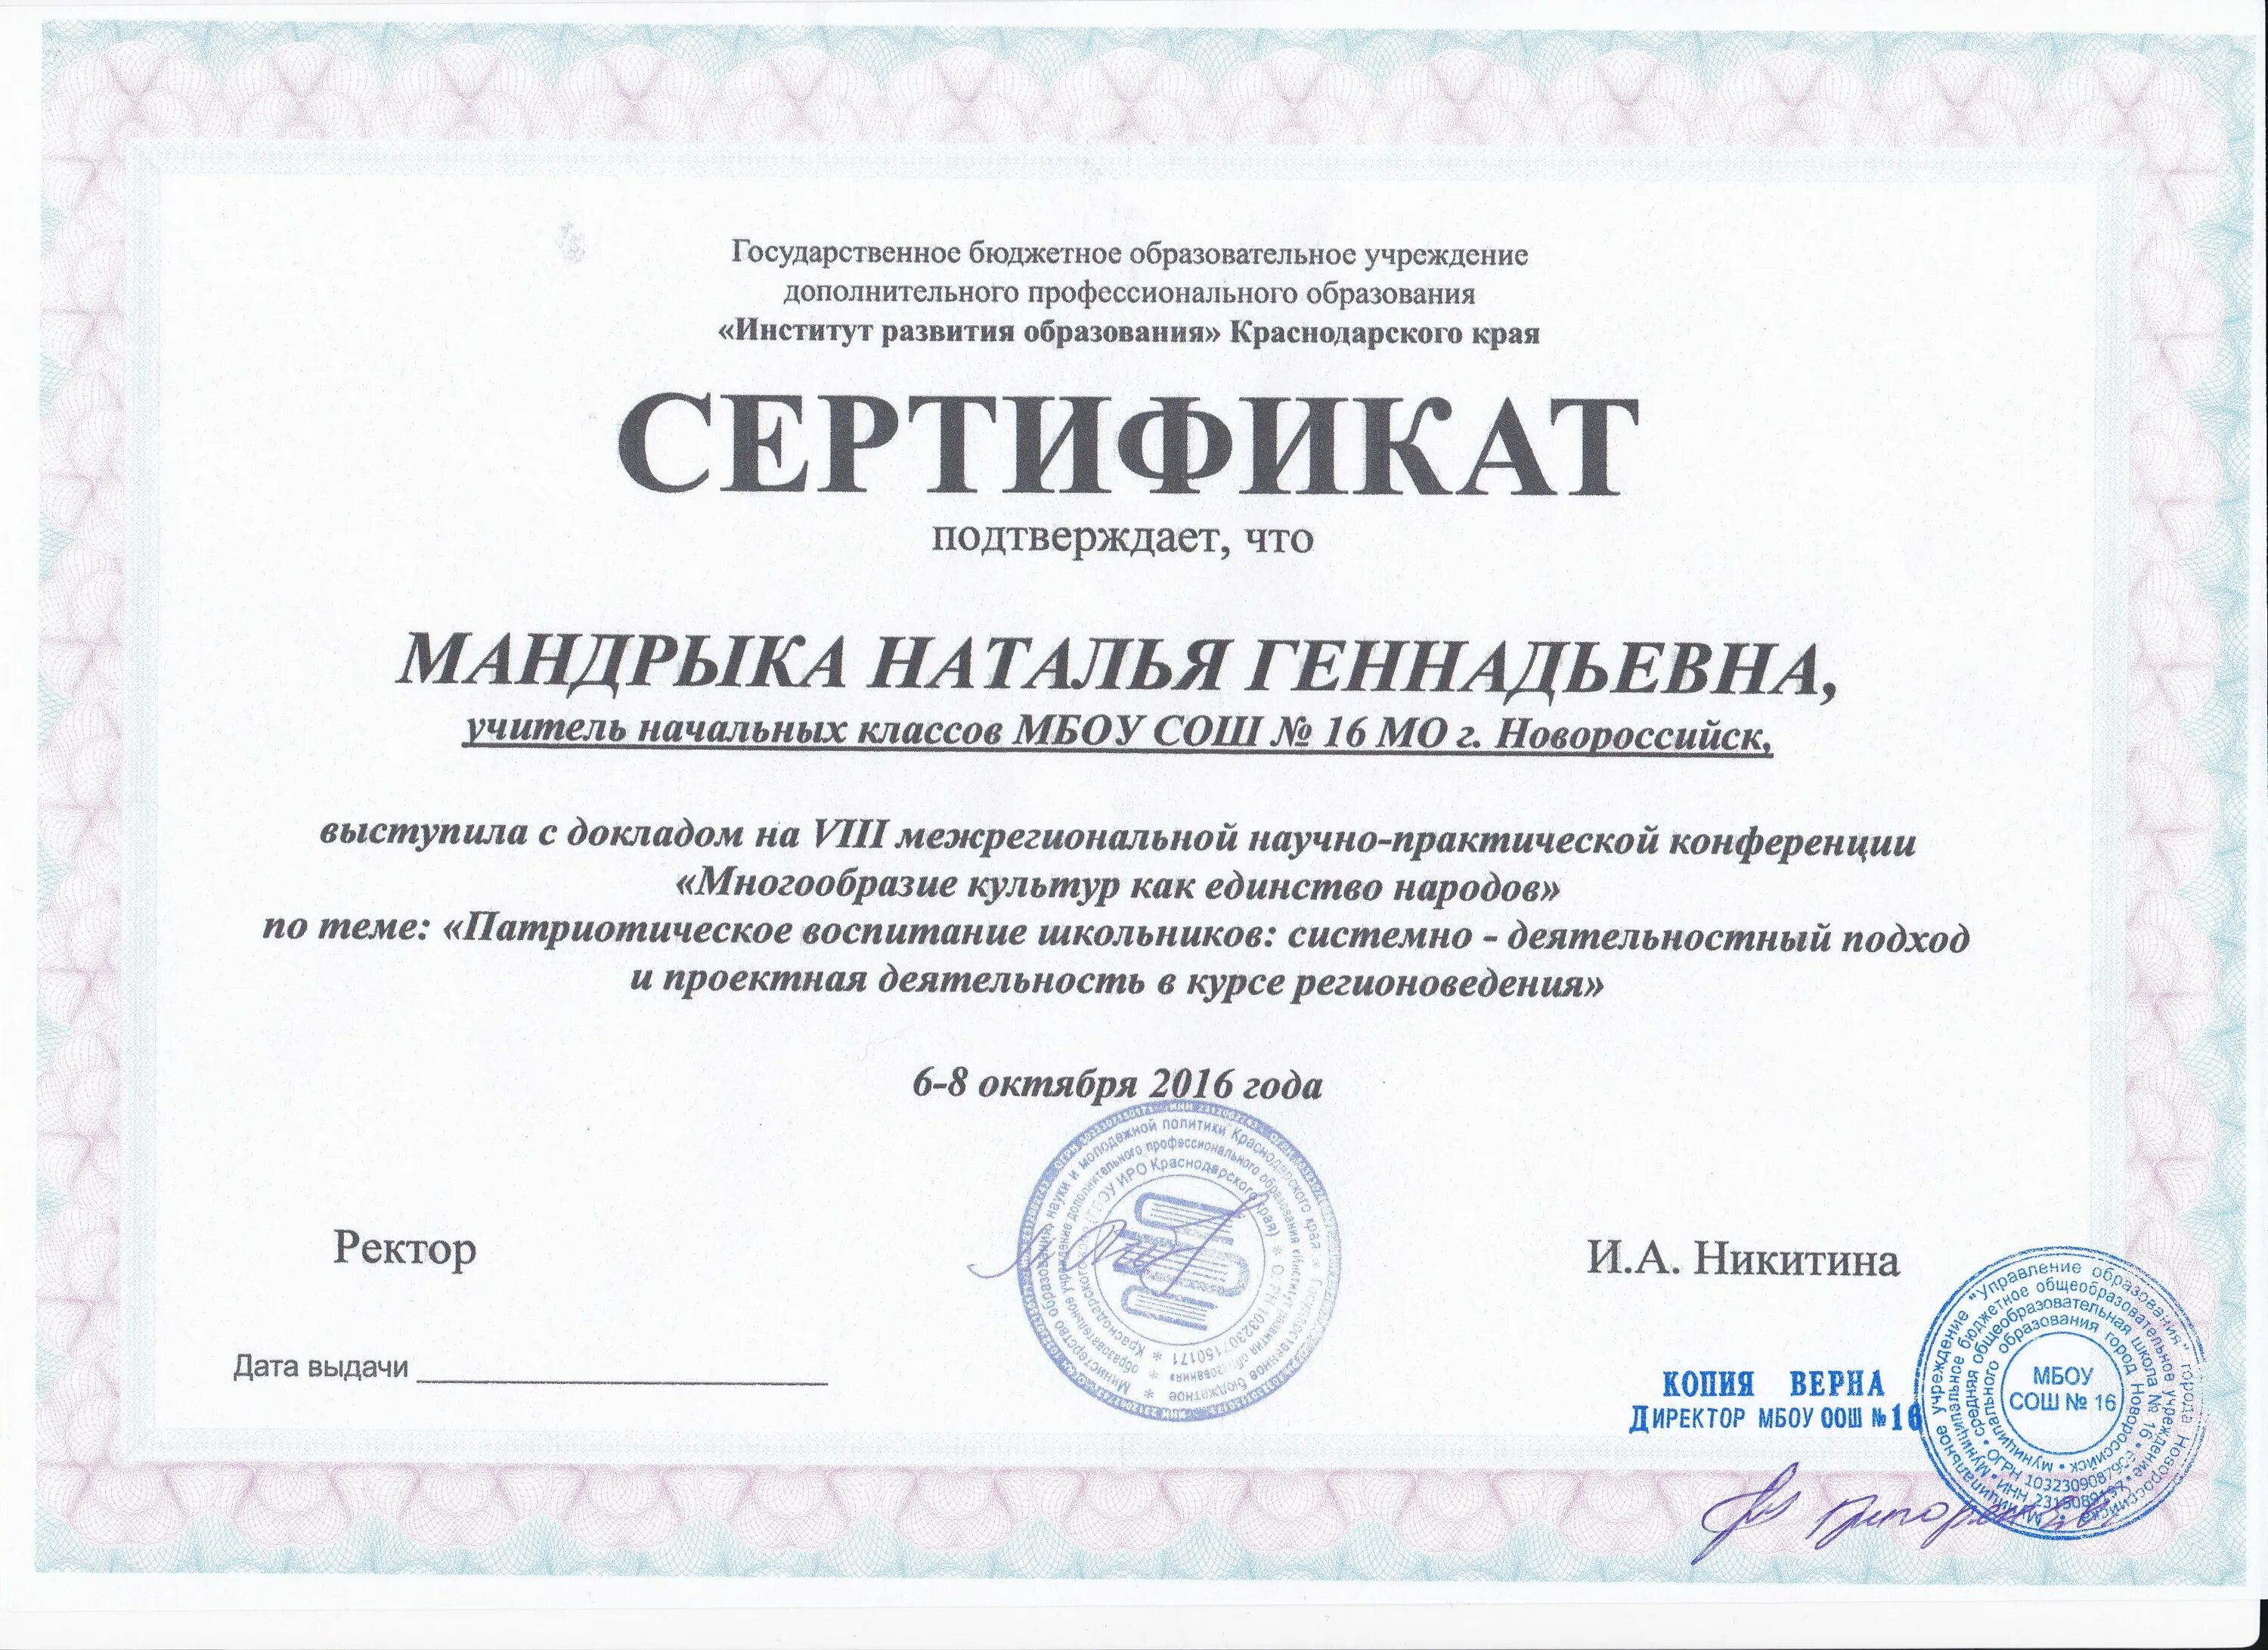 Институт развития образования Краснодарского края. Сертификат об опыте работы. Сертификаты обмен опытом.